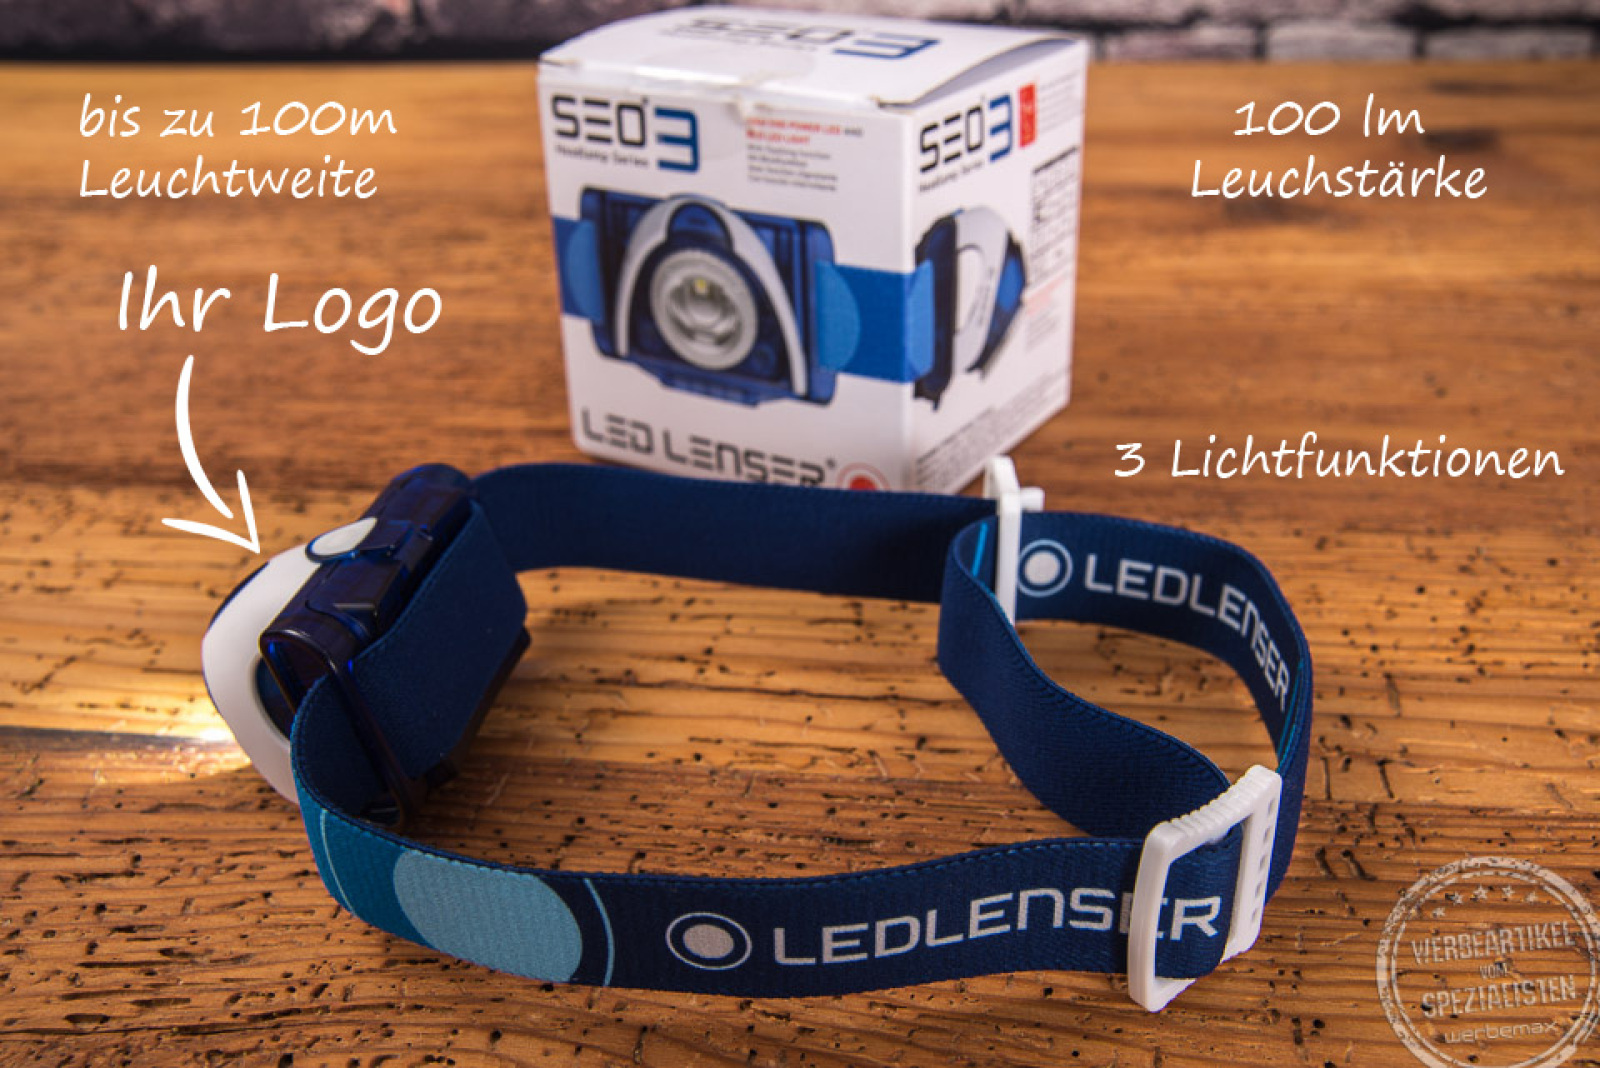 Logoanbringung LED Lenser Stirnlampe